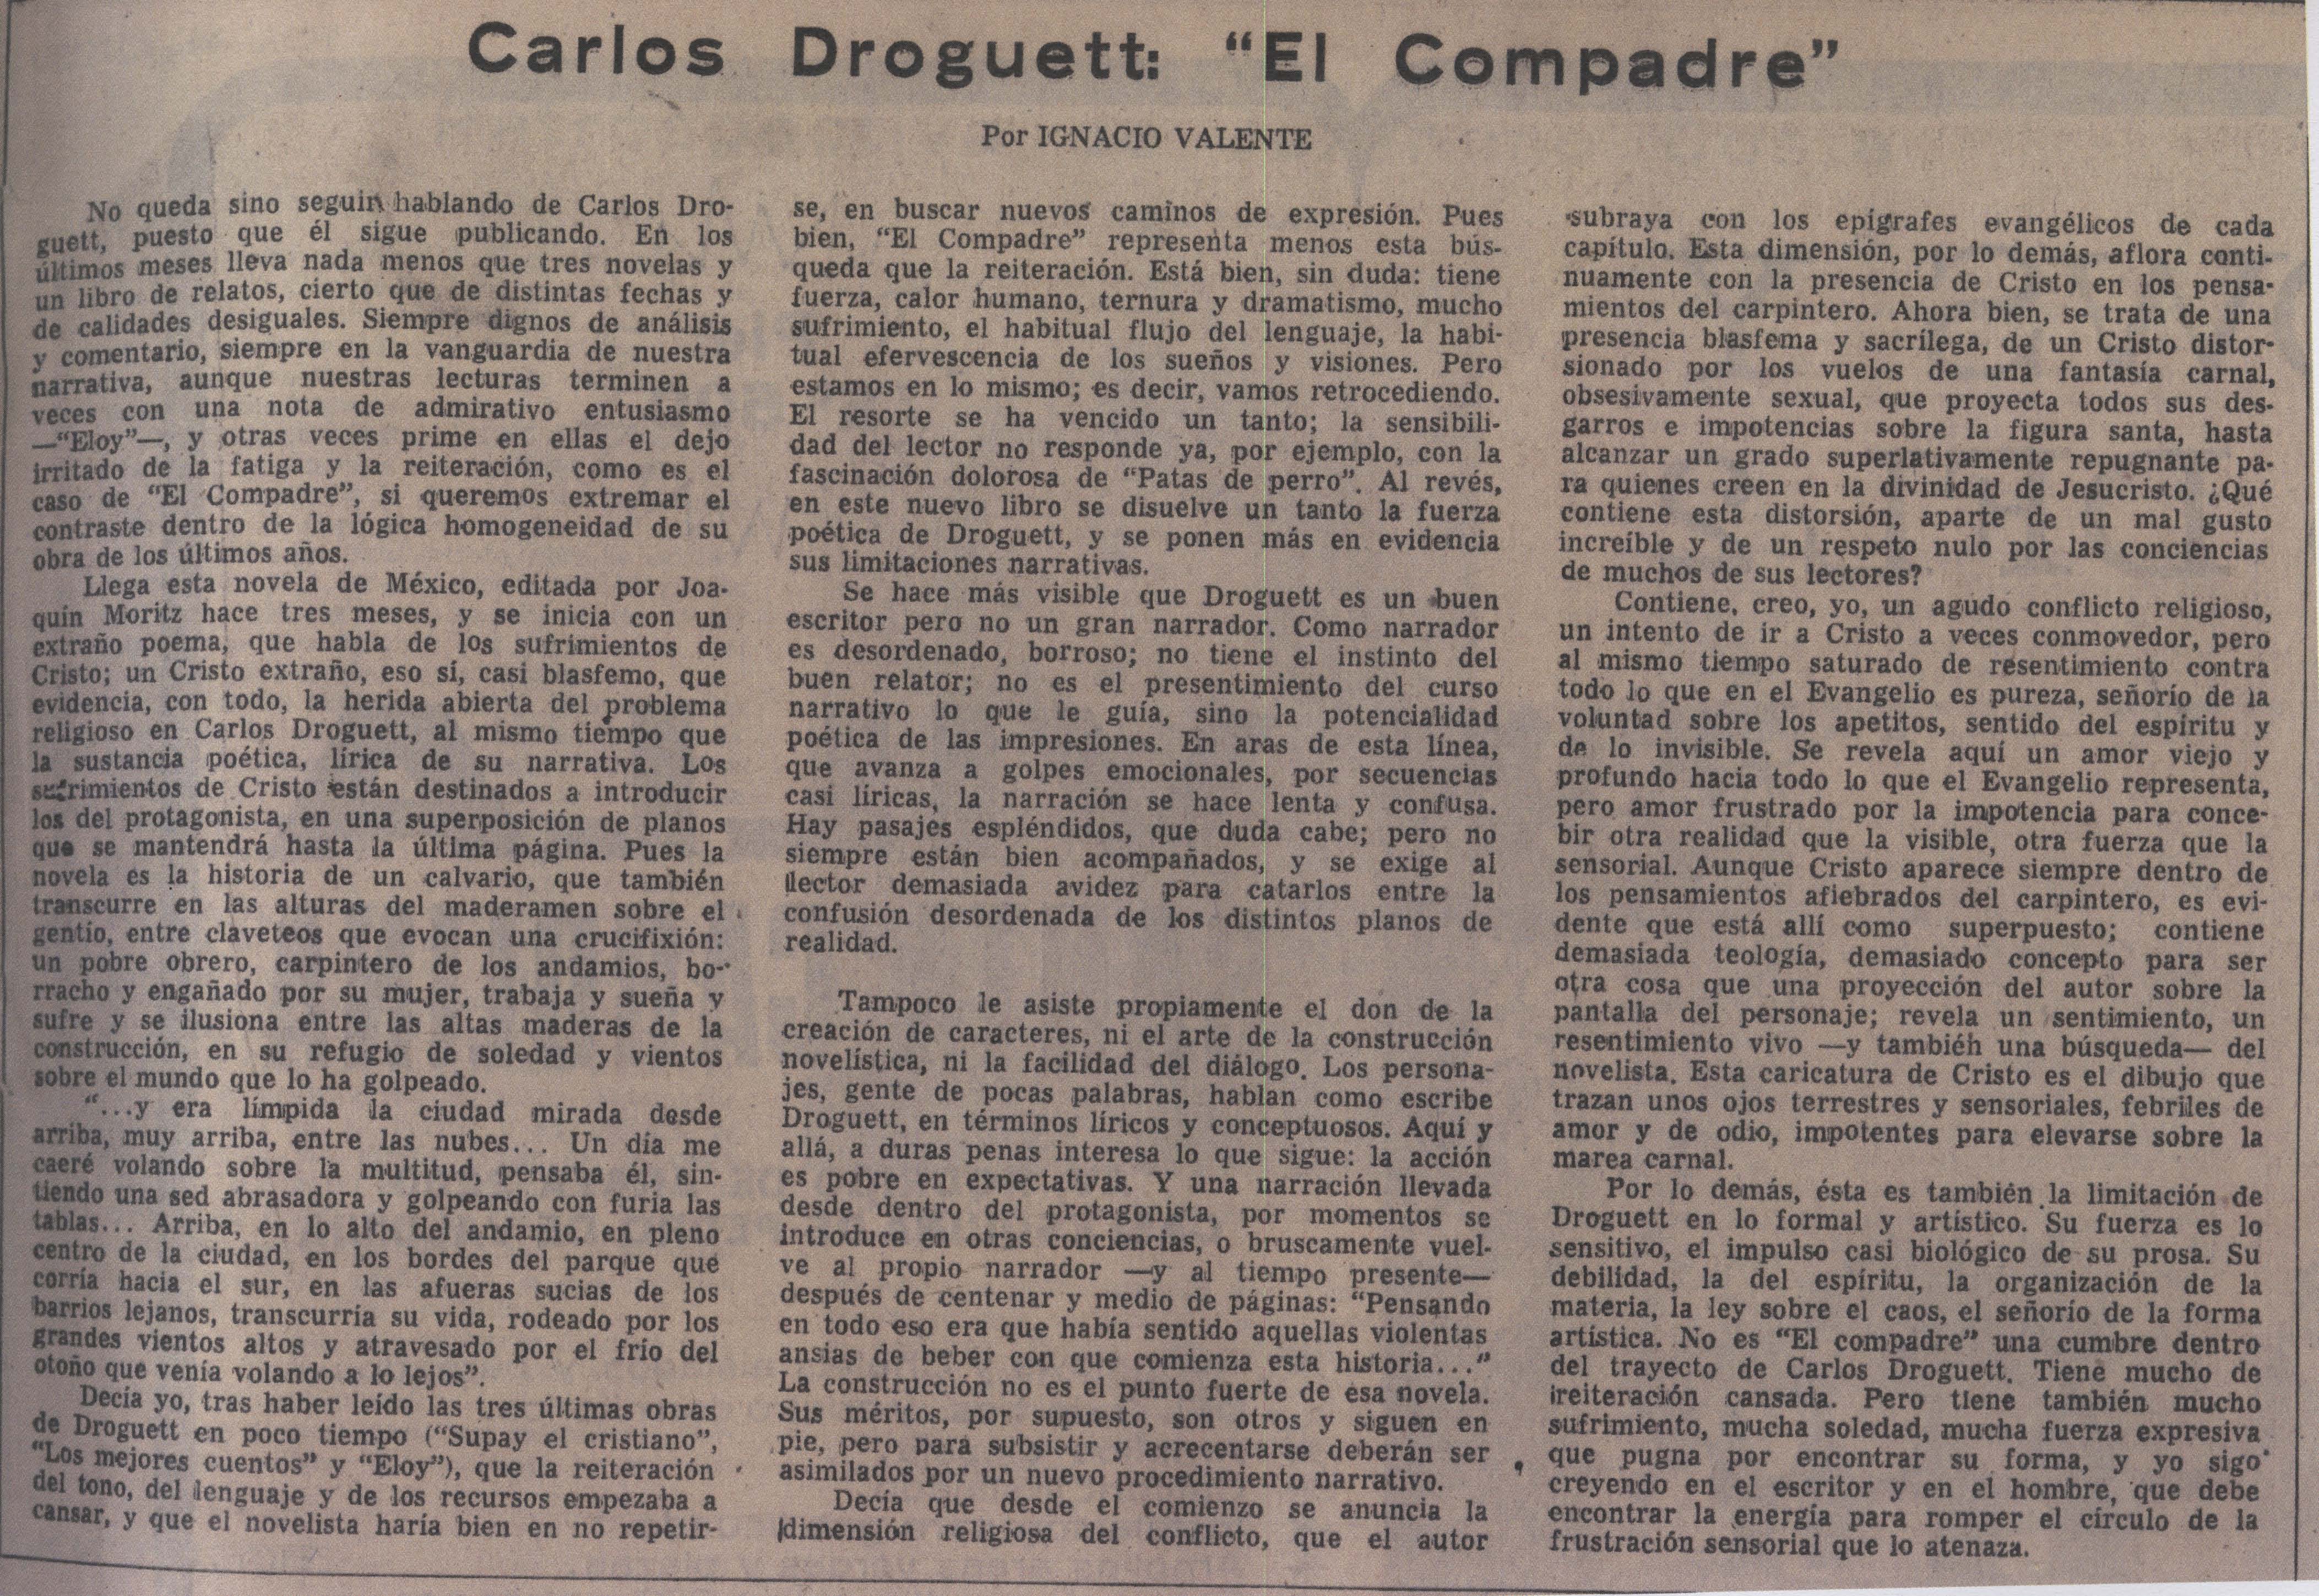 Carlos Droguett, "El compadre"